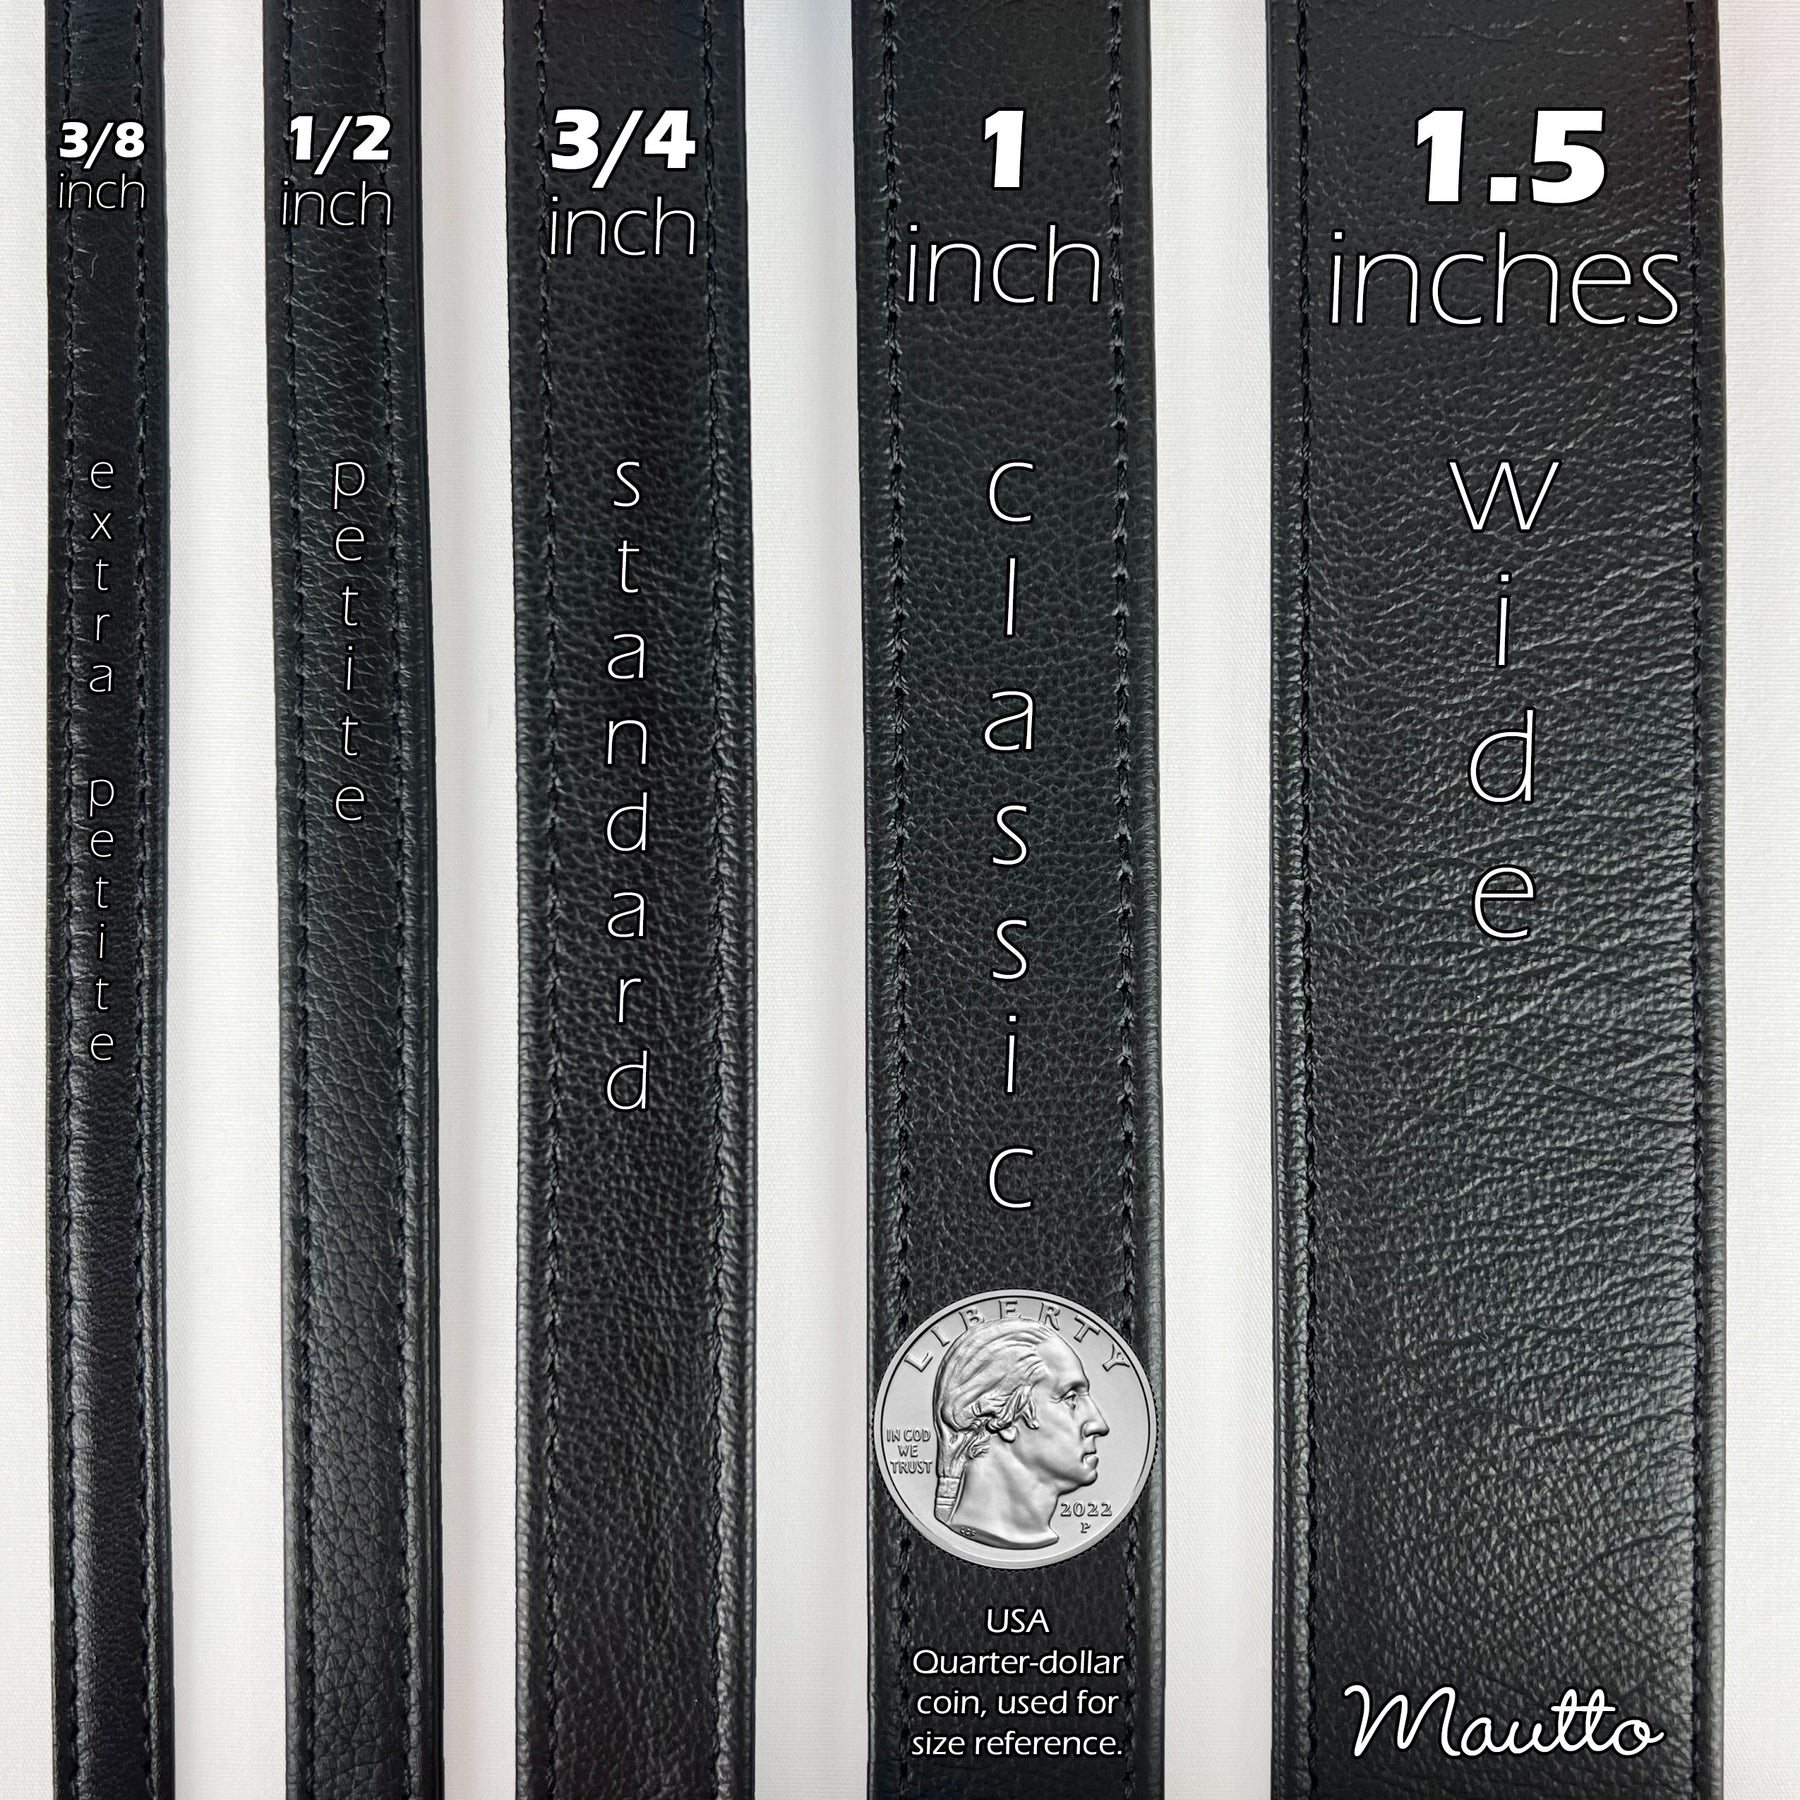 Mautto Black Leather Strap (13mm Petite Width) for LV Pochette, Alma, Eva Etc 40 Short Crossbody / Silver-Tone